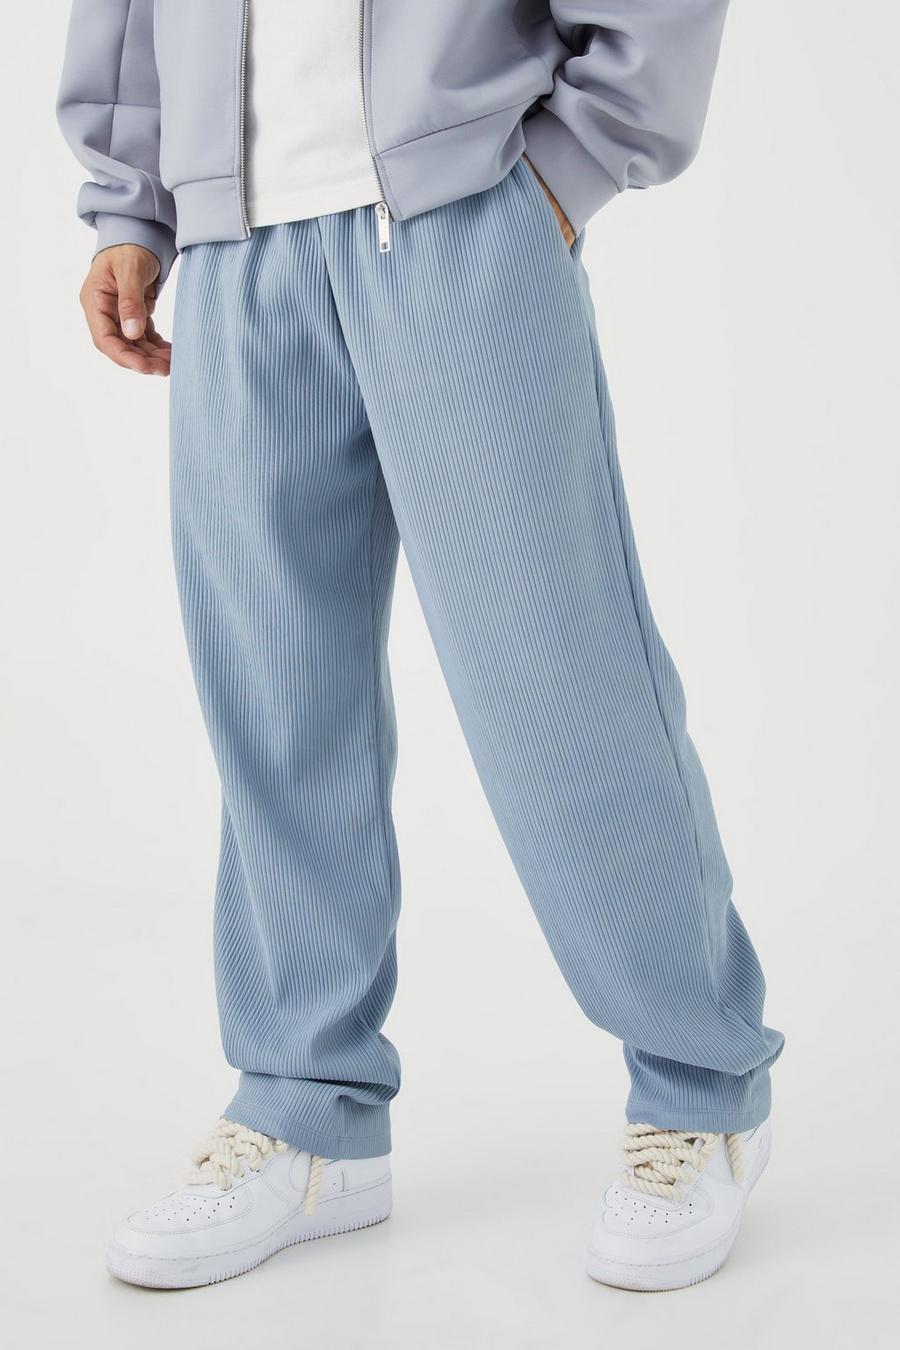 Pantalón de pernera recta plisado grueso, Blue